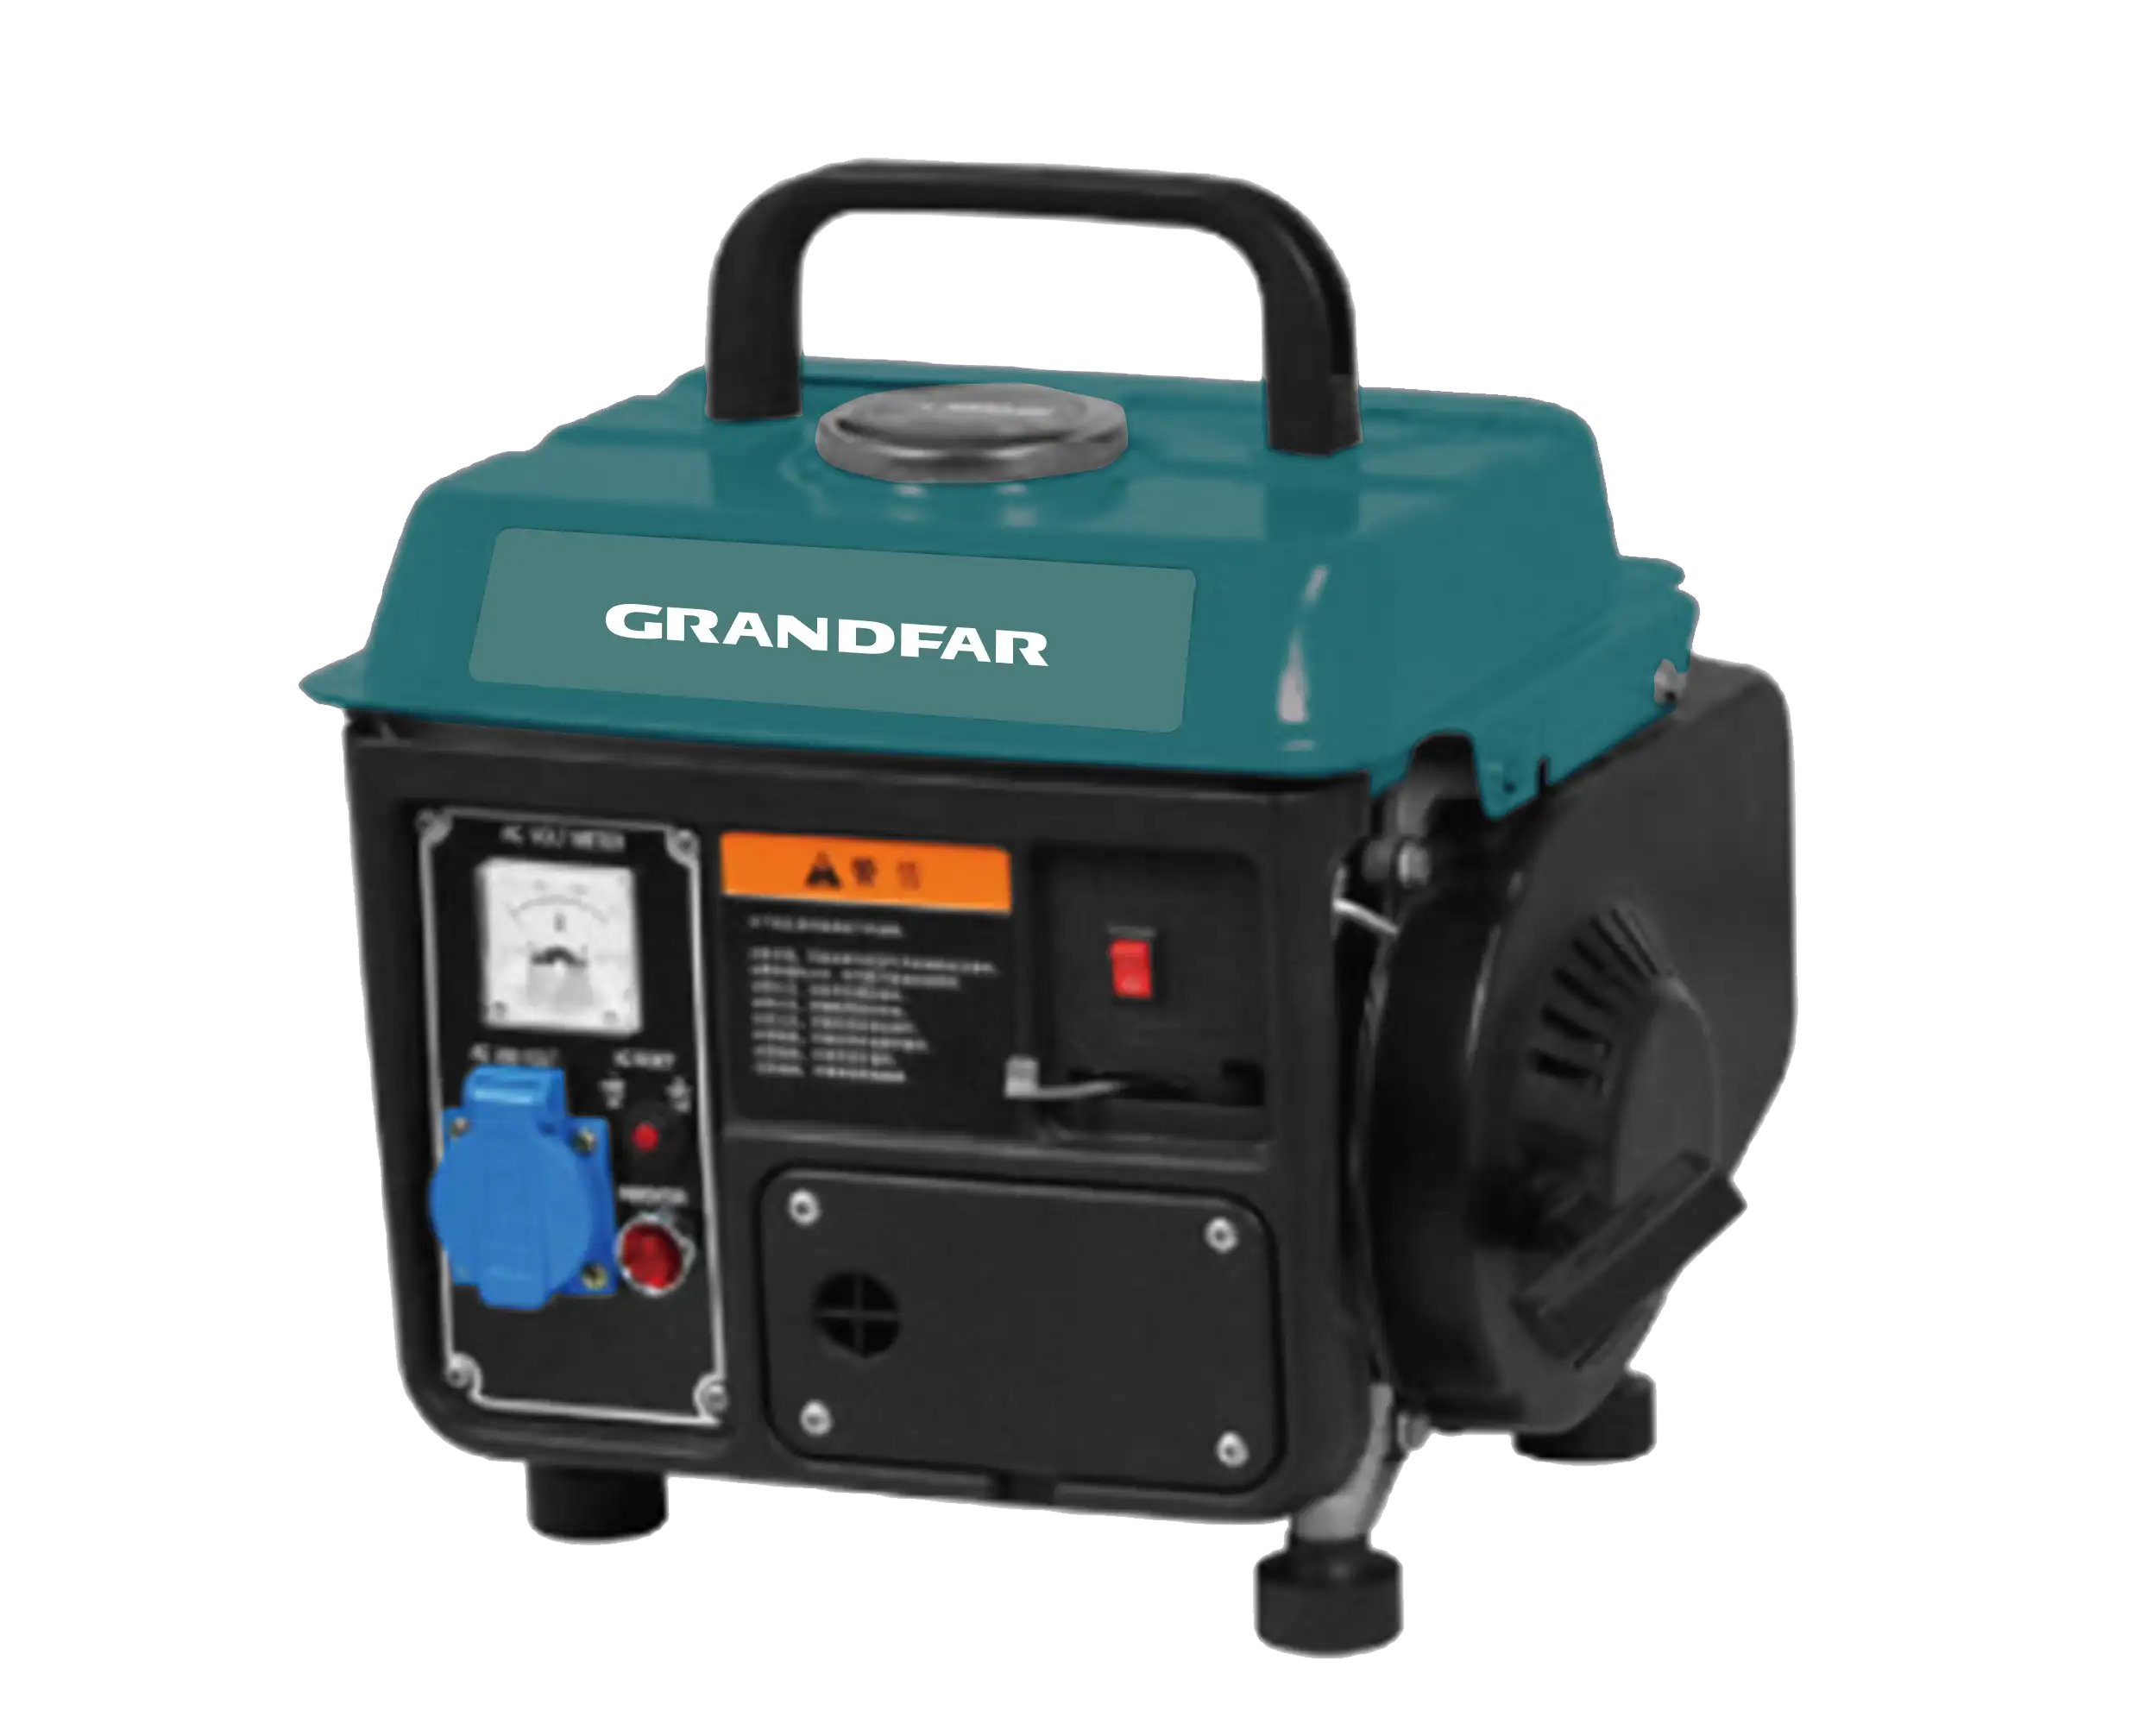 GRANDFAR 900W Mini motori portatili silenziosi per macchinari 3600 giri/min 2.5Hp 4L 2 tempi 63cc gas generatore di benzina strumenti di prezzo per la casa